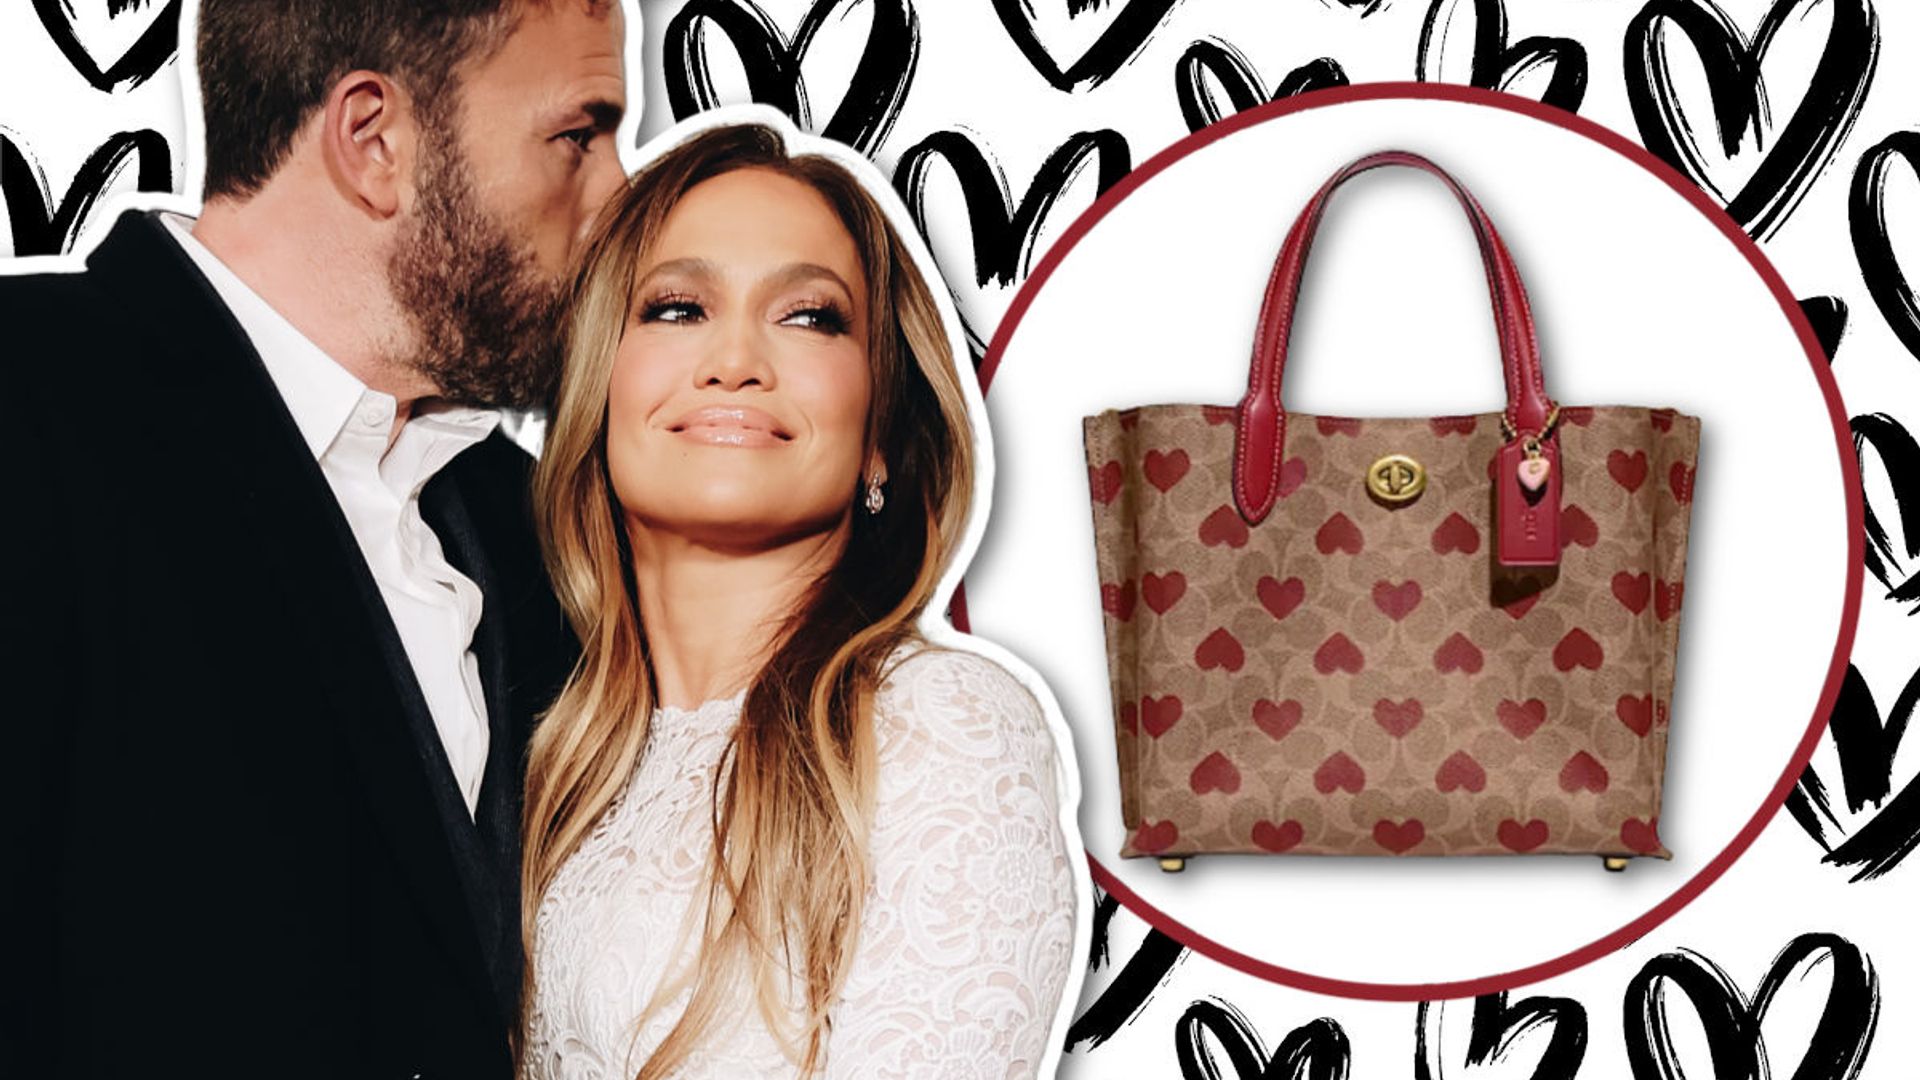 Bags By Louis Vuitton - Wedding Affair